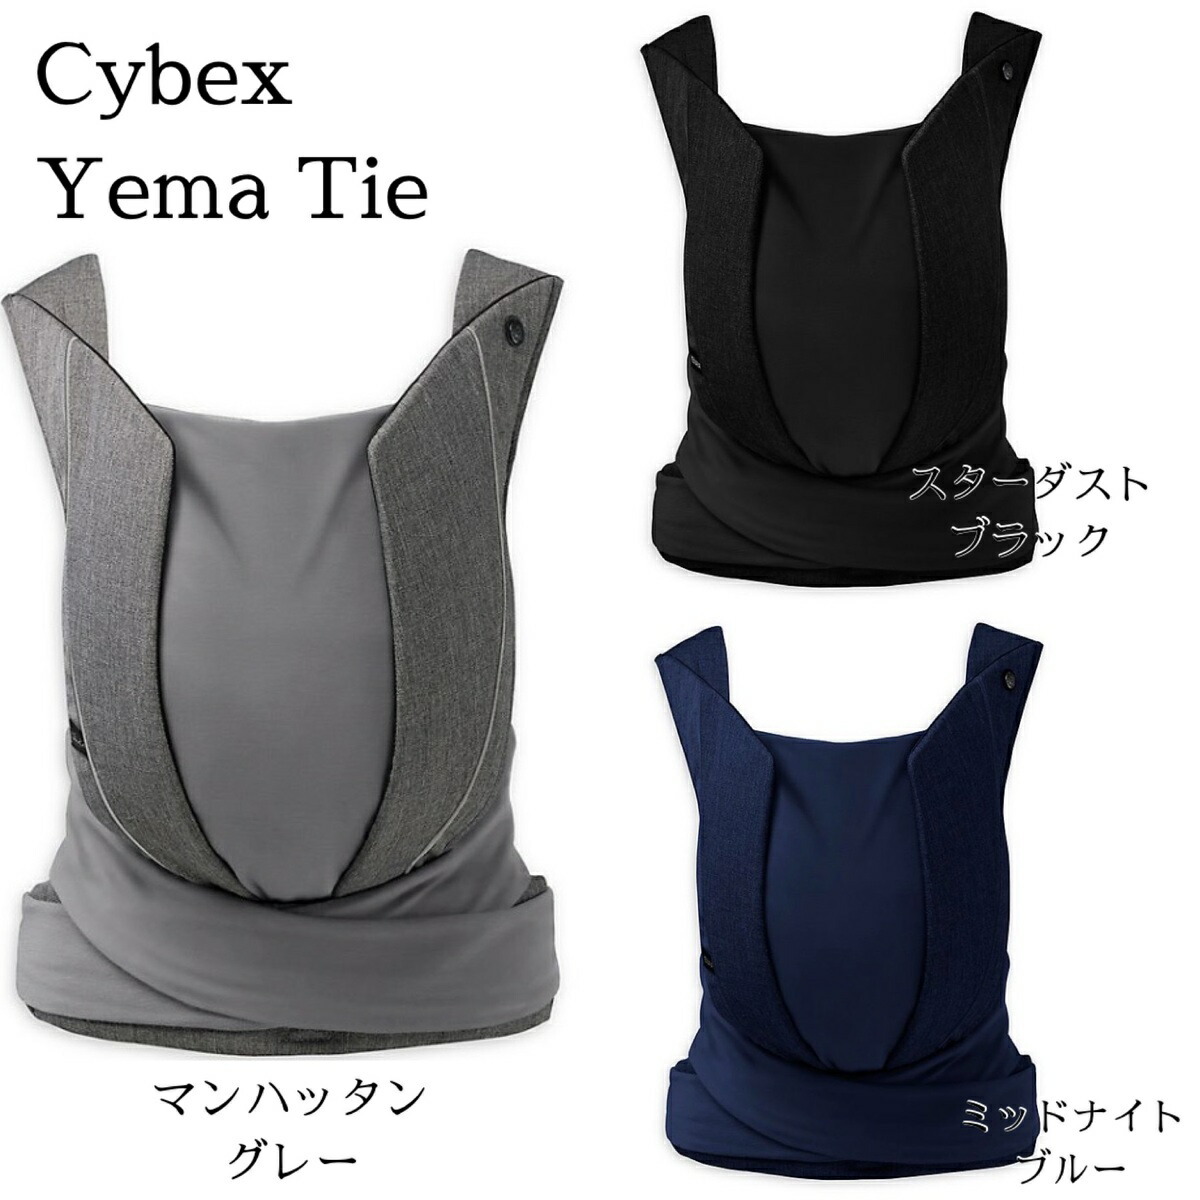 日本未発売モデル Cybex サイベックス Cybex 最上級 抱っこひも Yema Tie 日本未入荷 ドイツ コンパクト 軽量 サイベックス  ベビーキャリアー スリング 抱っこ紐